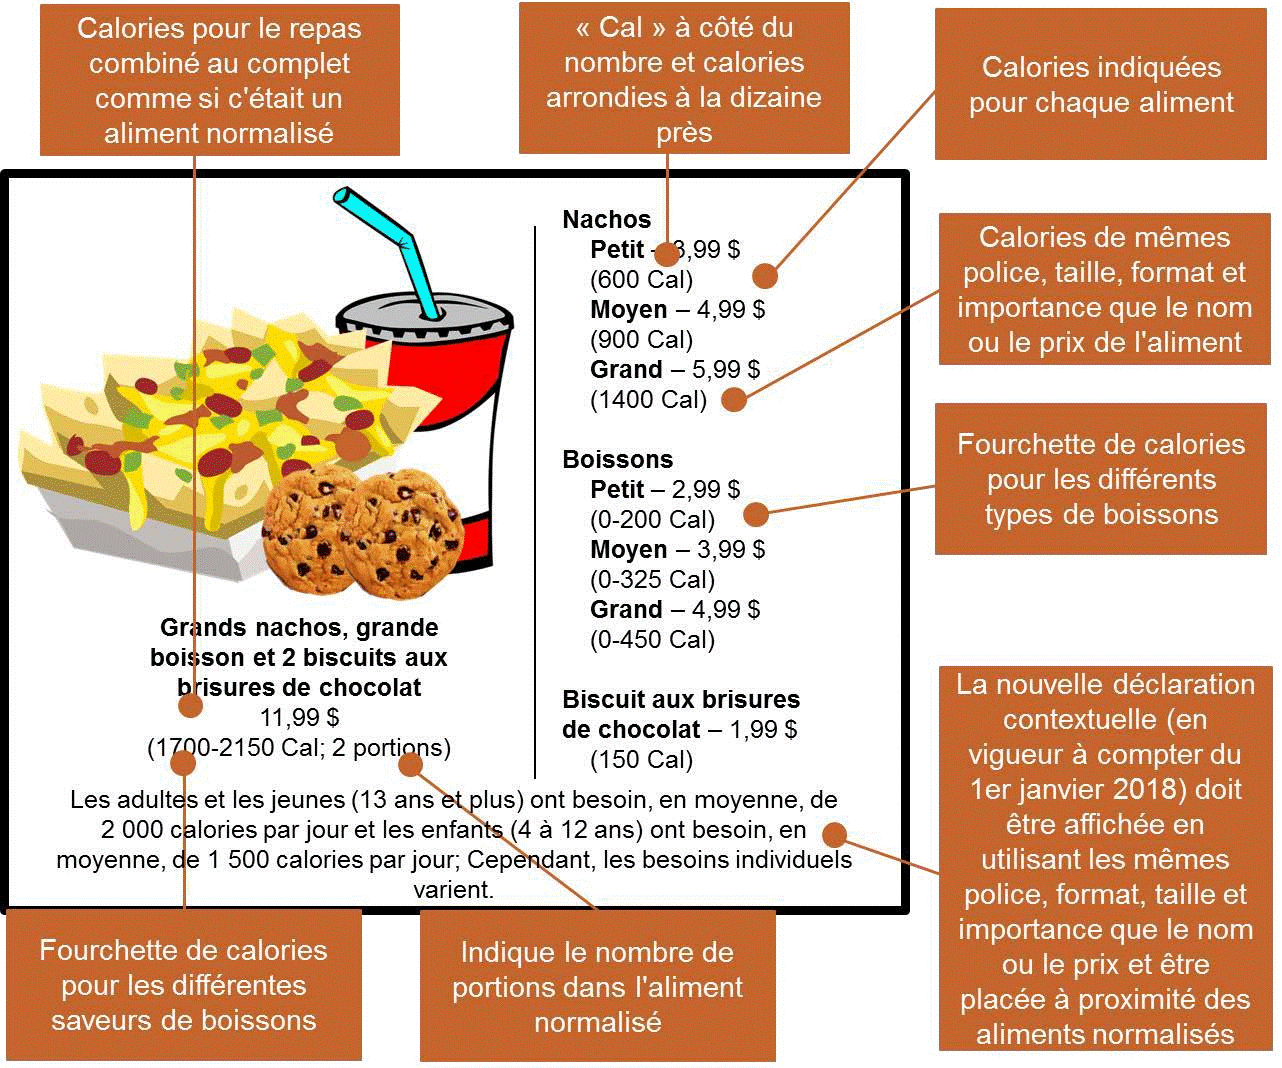 Affichage des calories de repas combinés pour plusieurs personnes